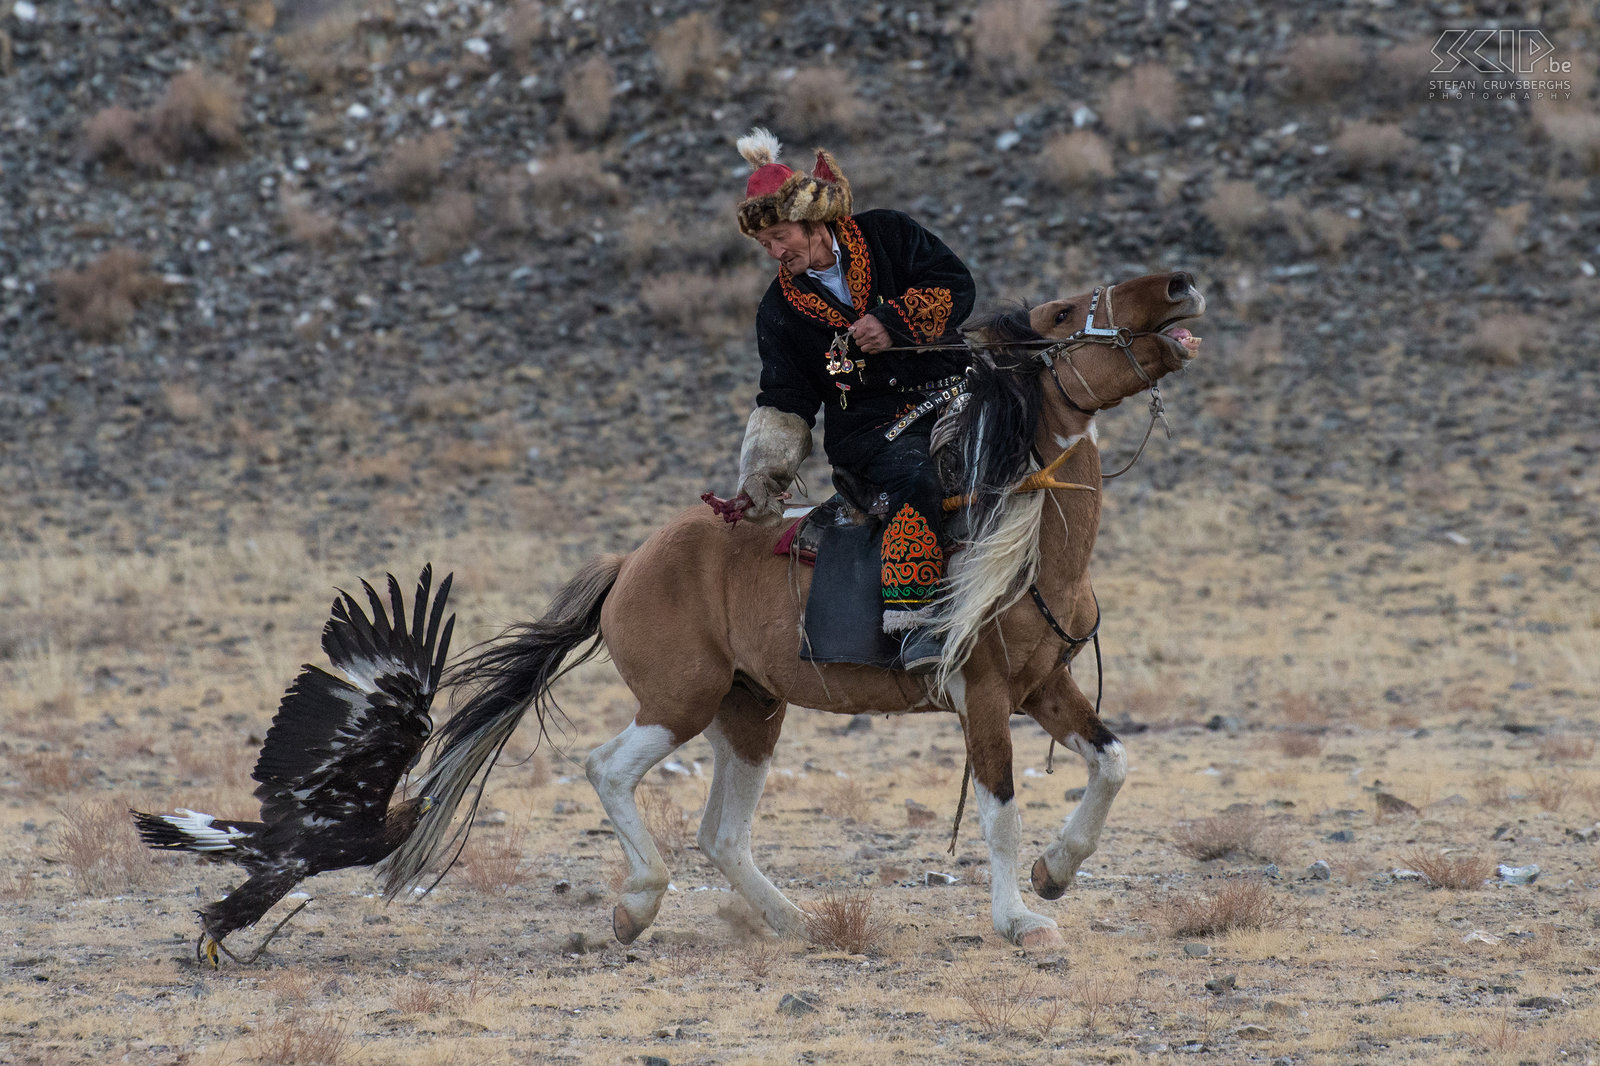 Ulgii - Golden Eagle Festival - Berkutchi Een berkutchy heeft drie dingen nodig in het leven:  een trouwe hond om de ger te bewaken, een snel paard en een sterke arend om te jagen. Stefan Cruysberghs